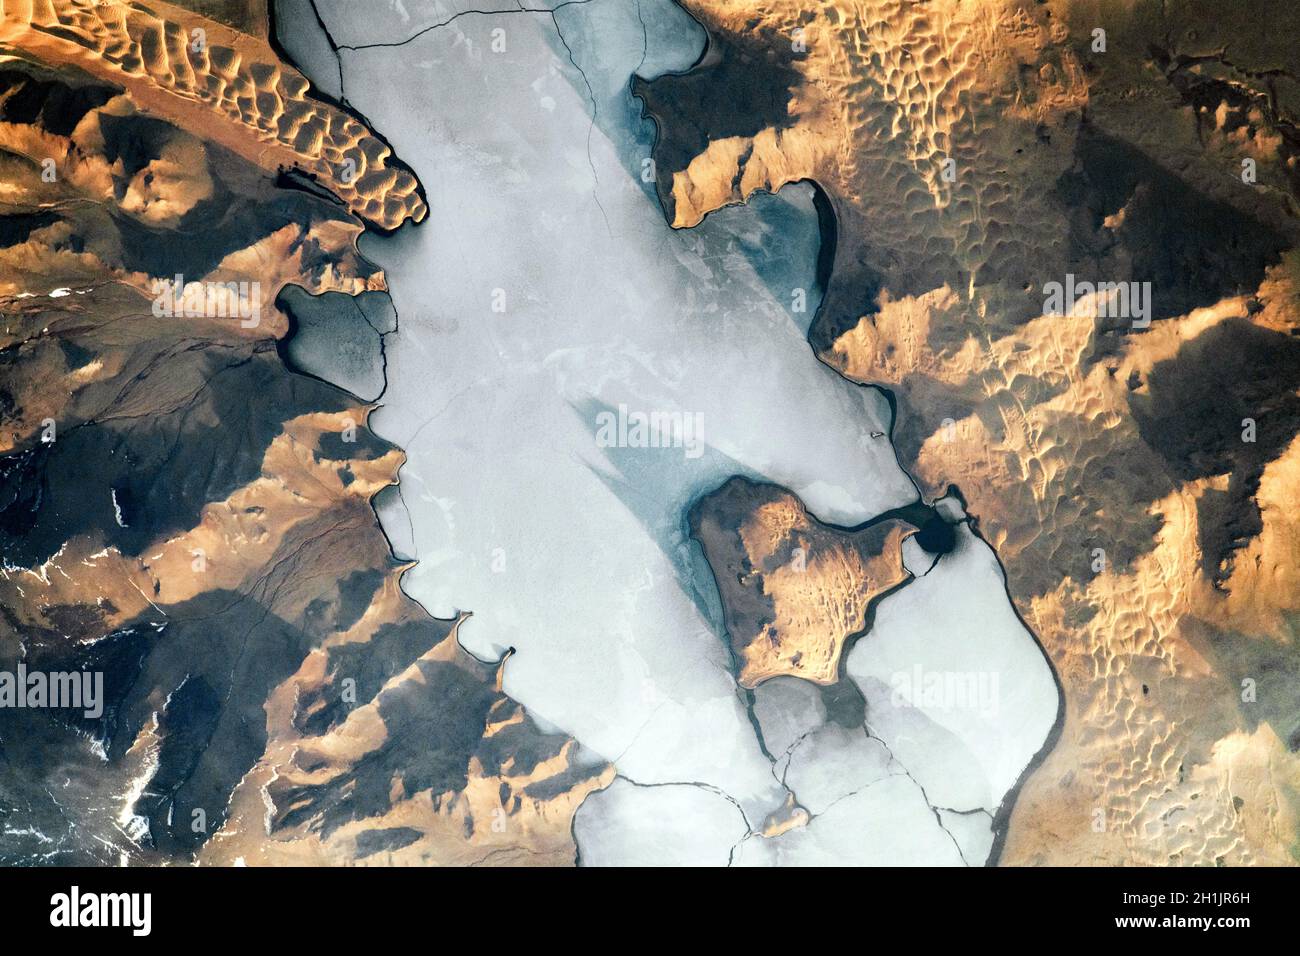 Landsat-Bilder der Erde: Schatten akzentuieren die Topographie in und um den Ulaagchinii Khar Nuur (See) in der Mongolei auf diesem Sonnenaufgangsfoto von der Internationalen Raumstation ISS. Beachten Sie die großen und kleinen Avgash-Inseln. Risse durchdringen die eisbedeckte Oberfläche des Sees, und Dünen umsäumen das Ufer. Die kalte, flache Eisoberfläche steht im Kontrast zu den markanten, rollenden Wellen von Sanddünen. Eine optimierte und digital verbesserte Version eines NASA-Bildes/Credit NASA Stockfoto